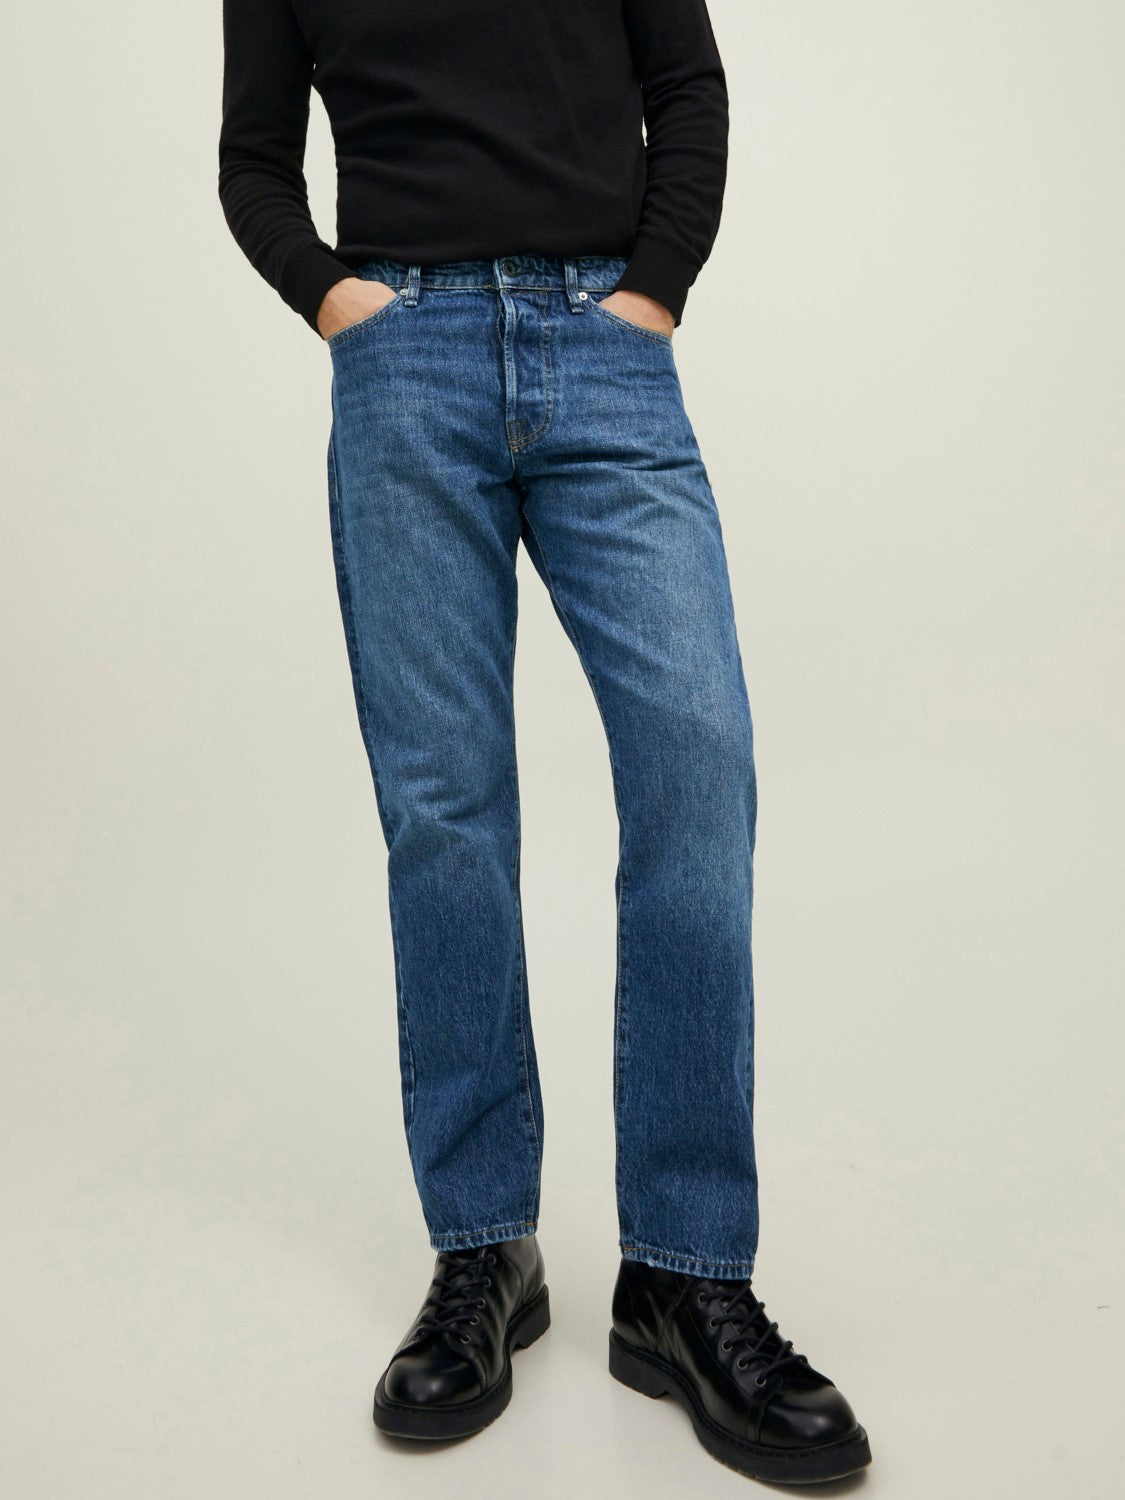 Jack&Jones Chris Cooper 790 Jeans